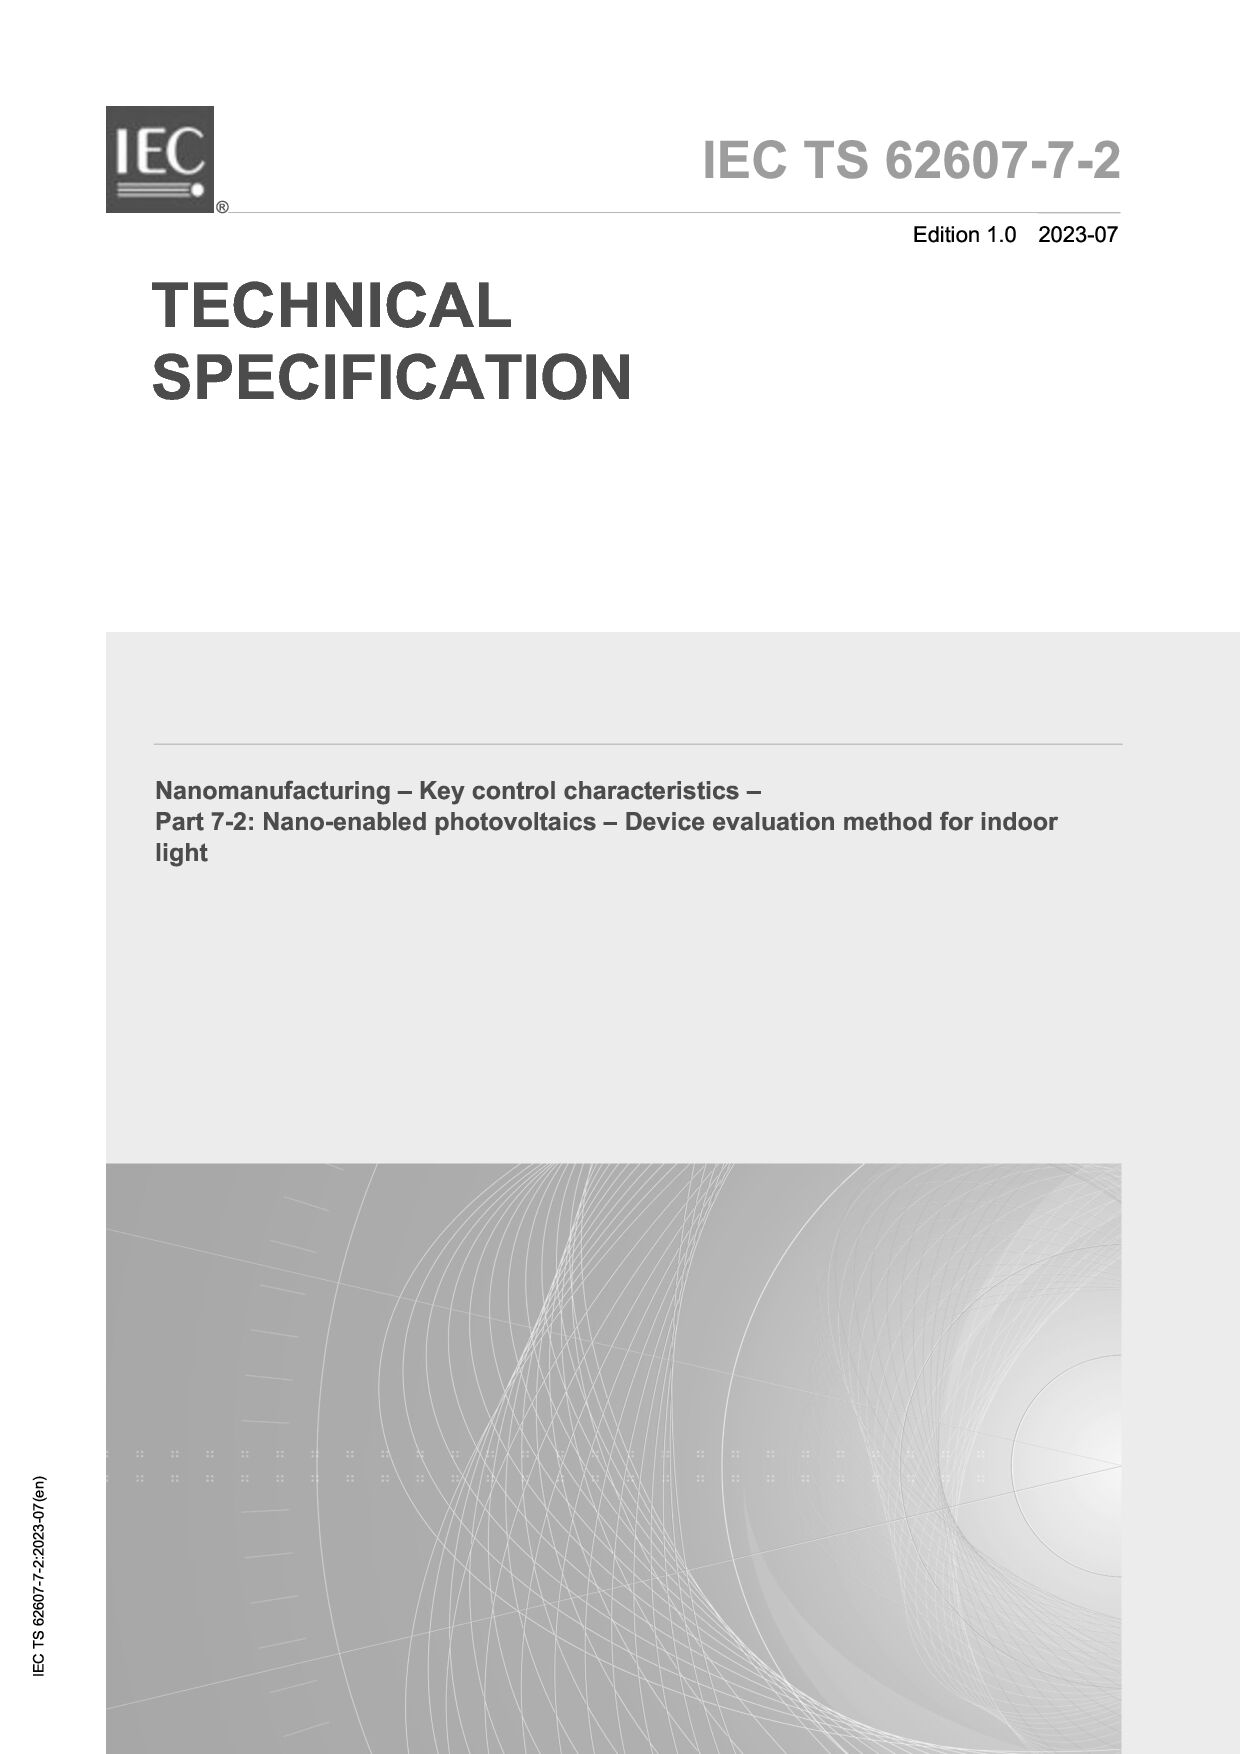 IEC TS 62607-7-2:2023